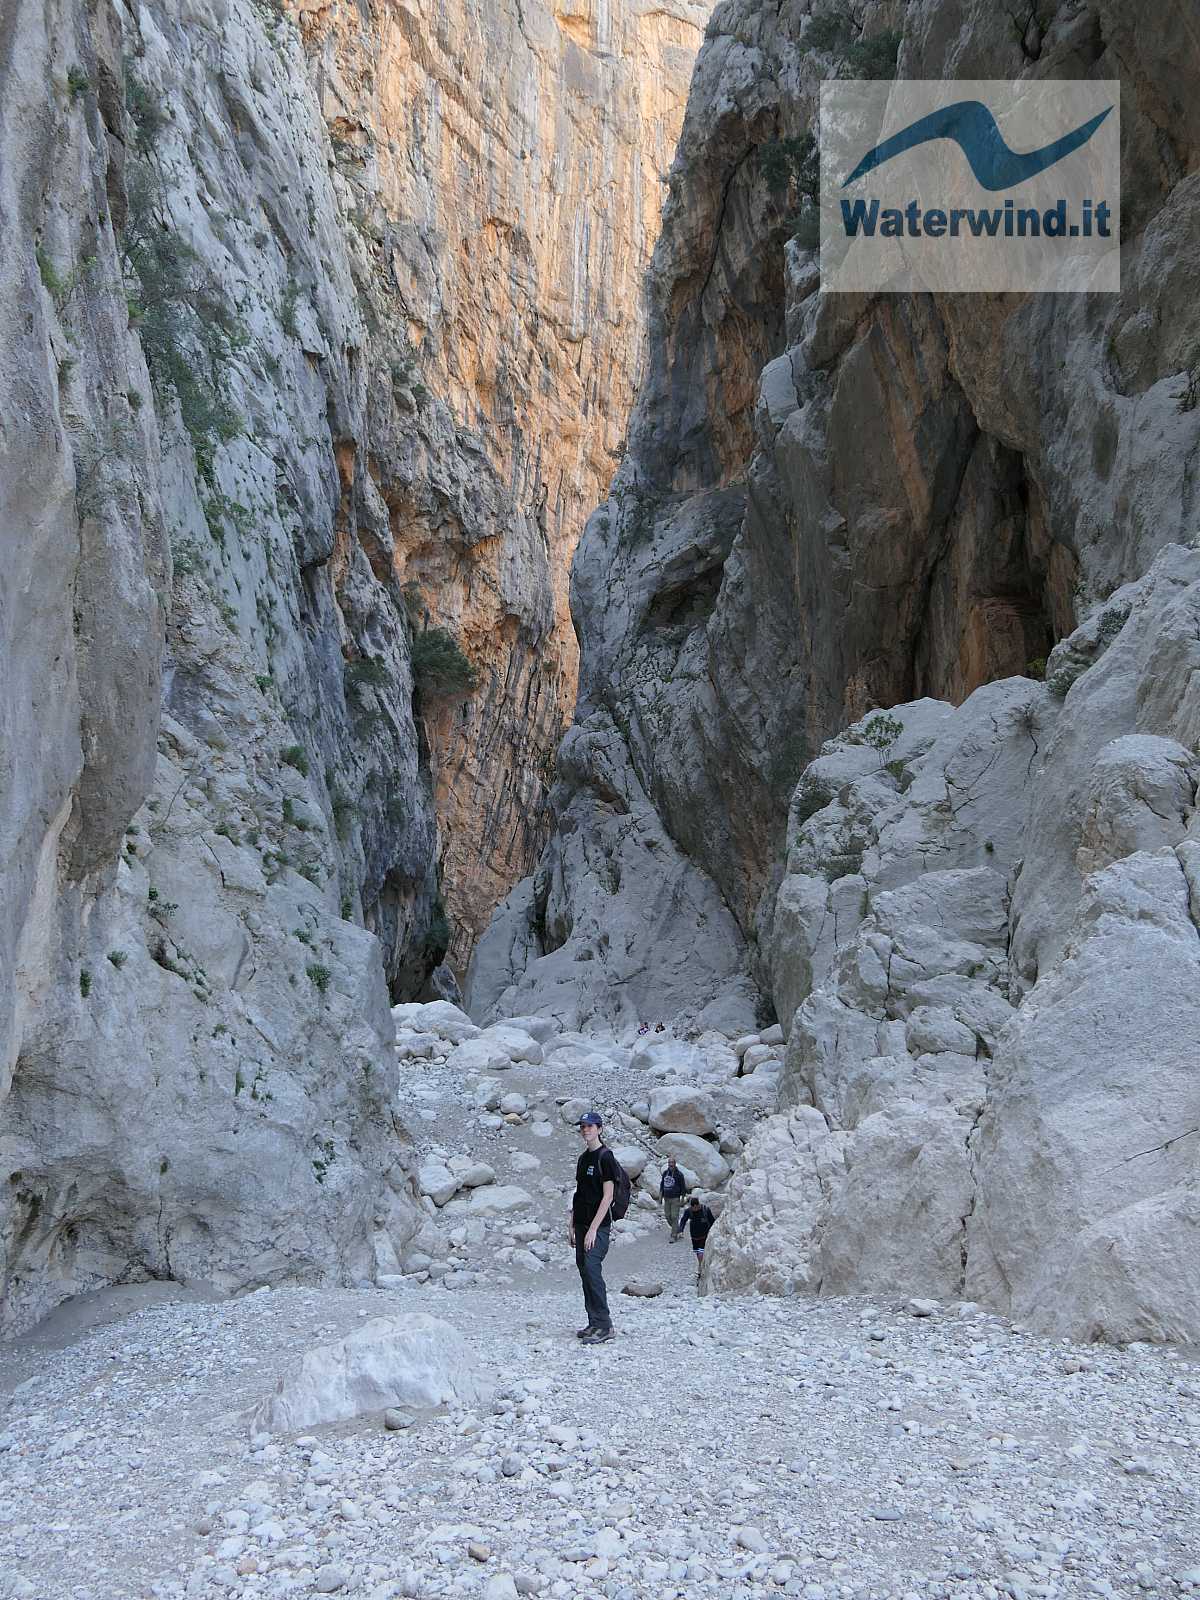 Gorges of Gorropu, Sardinia